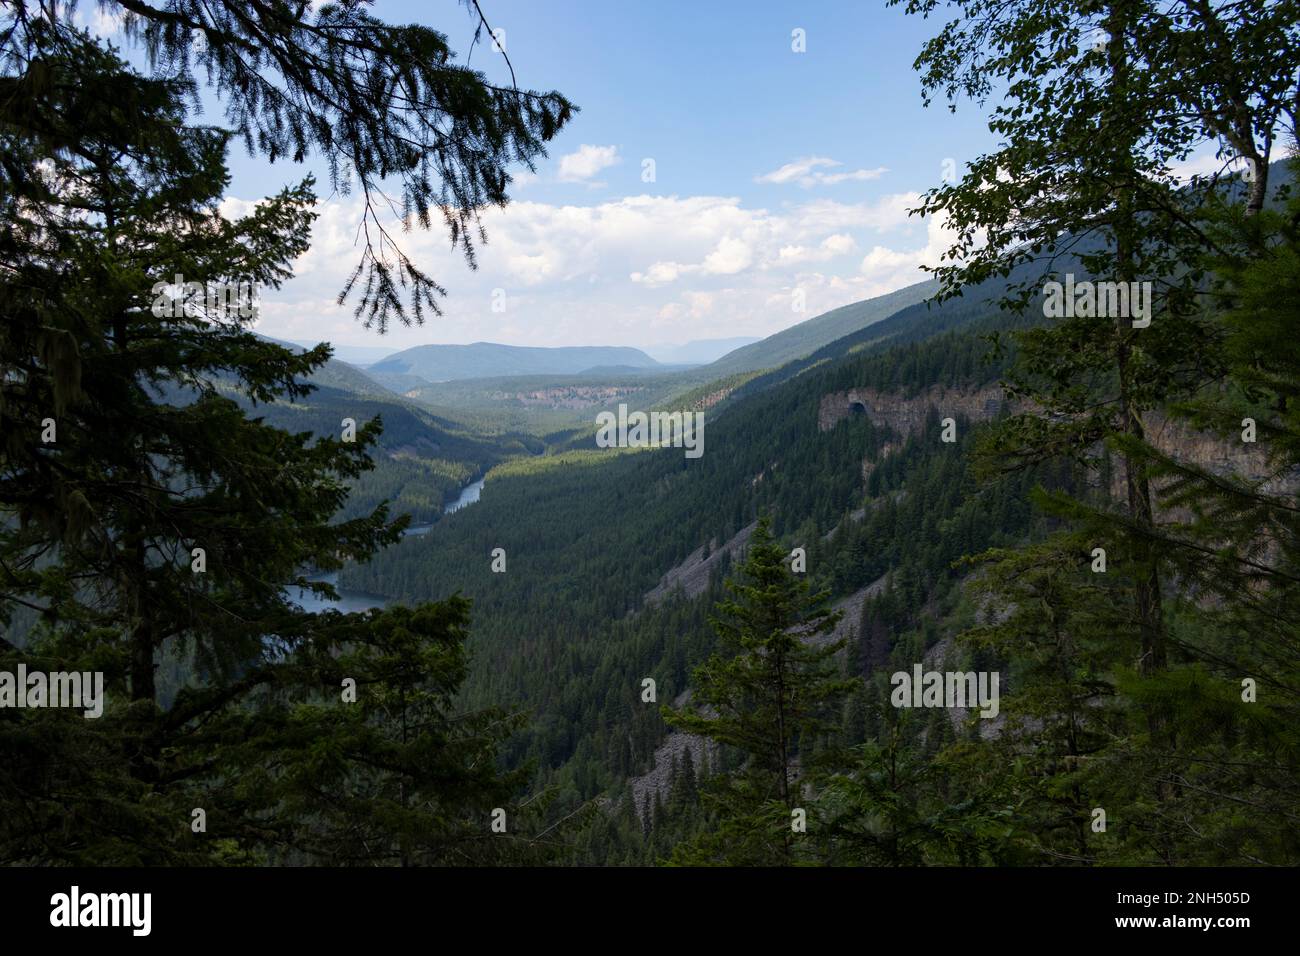 Vue entre les arbres dans la forêt de la Colombie-Britannique du Canada Banque D'Images